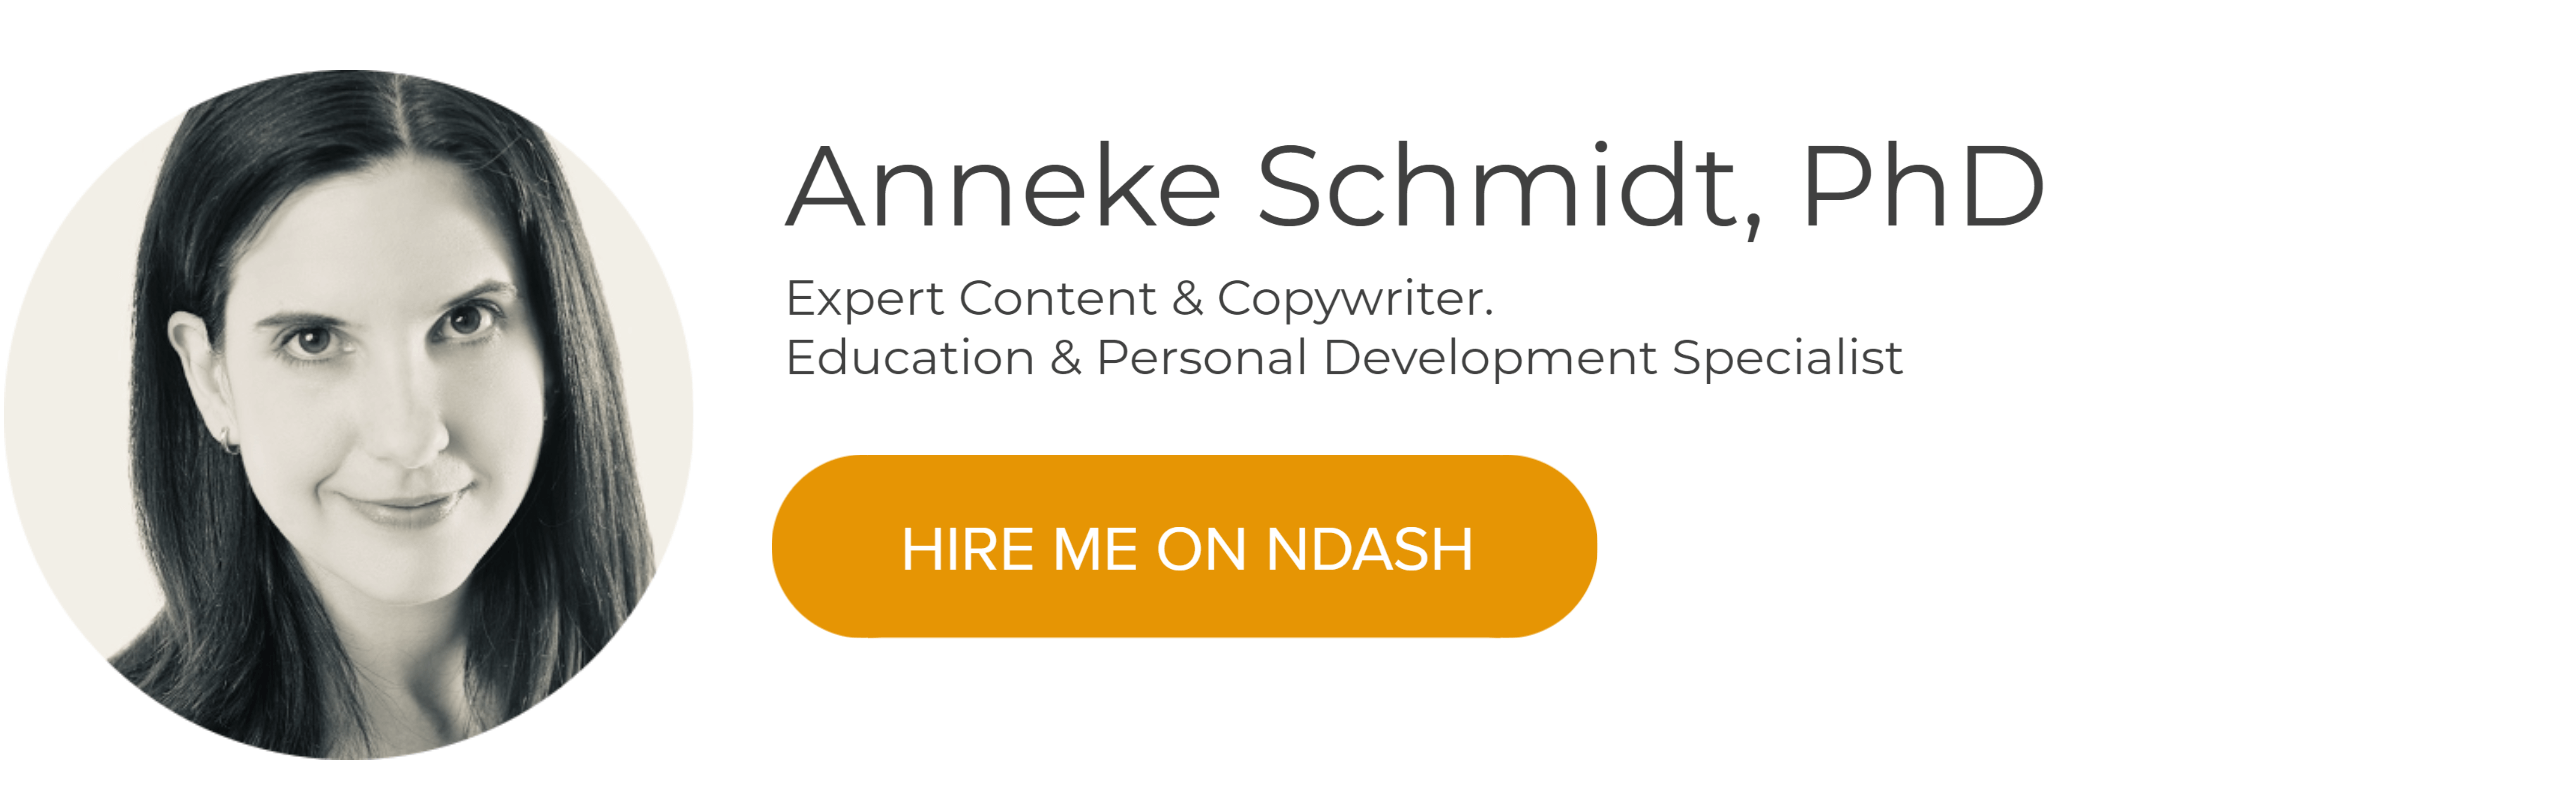 Anneke Schmidt, PhD: Expert Content & Copywriter